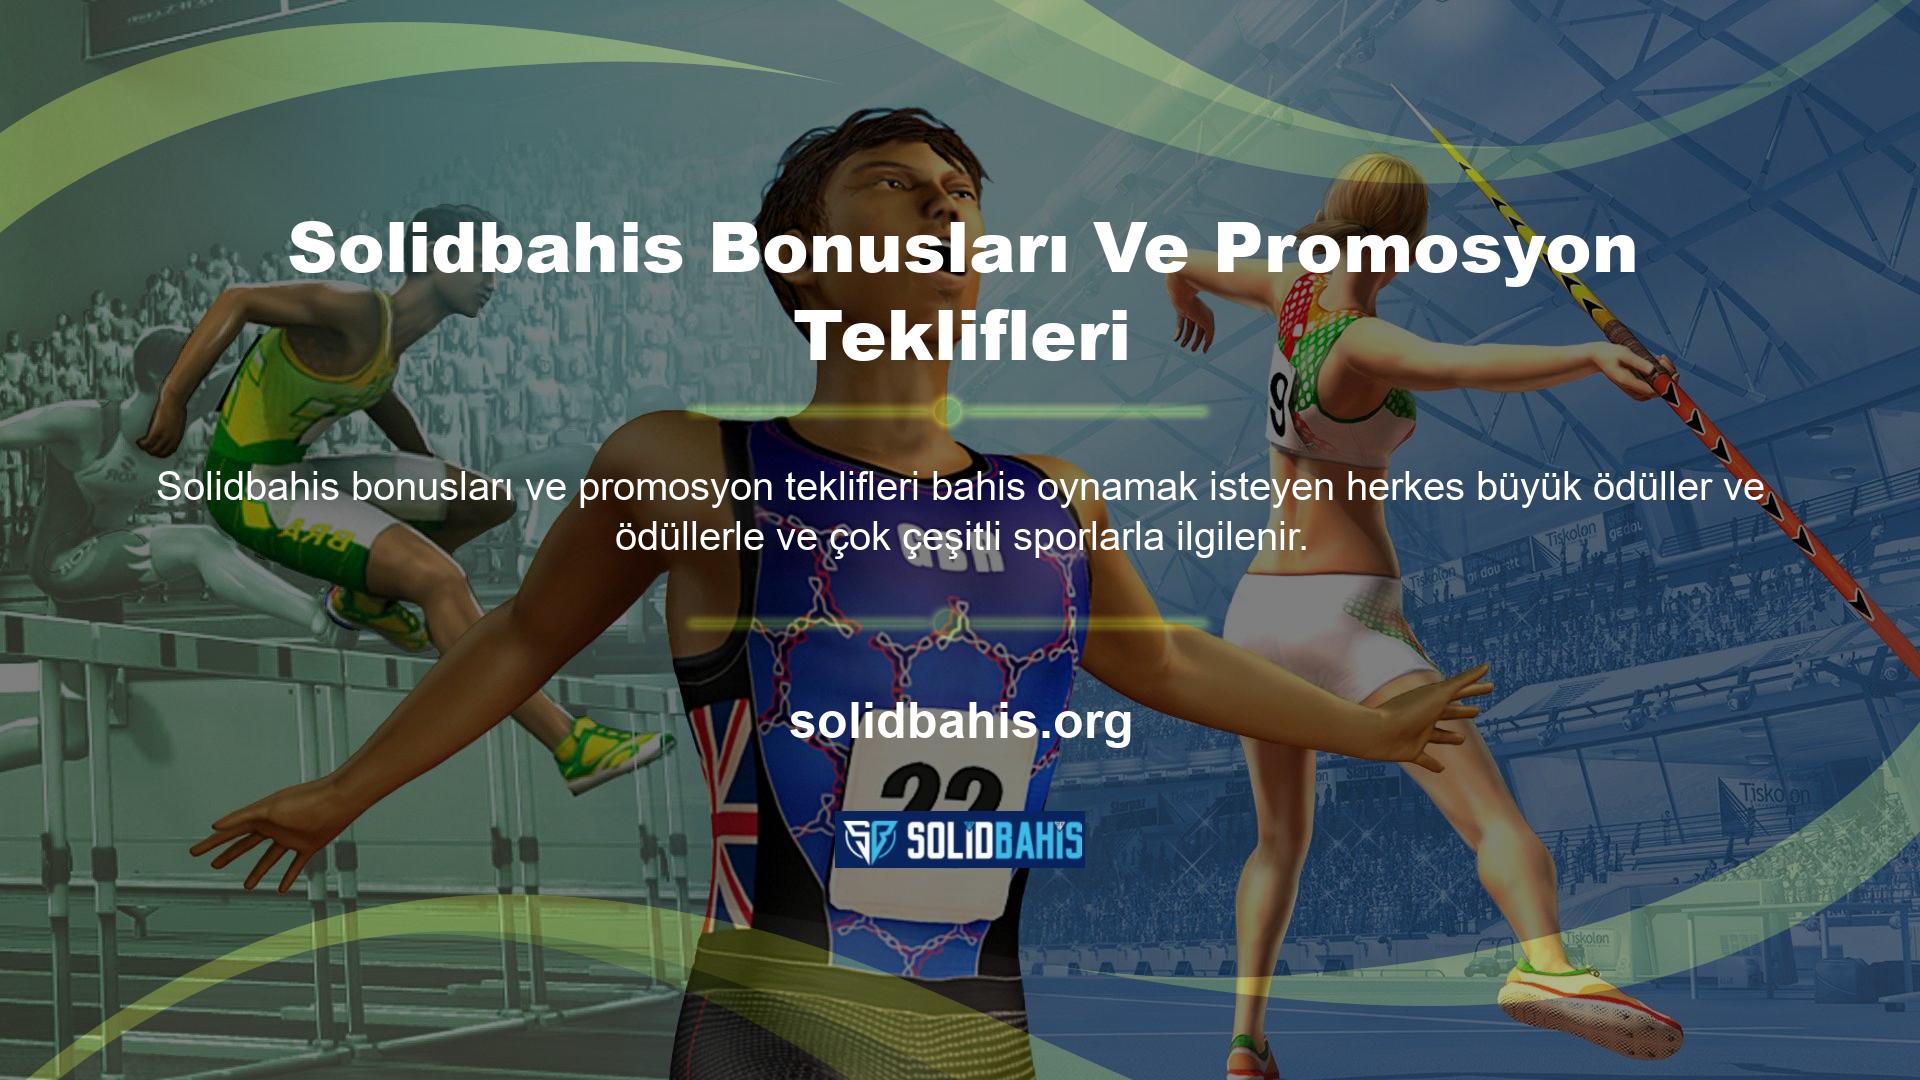 Premium bahis siteleri genellikle tercih edilmektedir ve bu nedenle Solidbahis Bonus Sitesi de bunlardan biri olarak öne çıkmaktadır